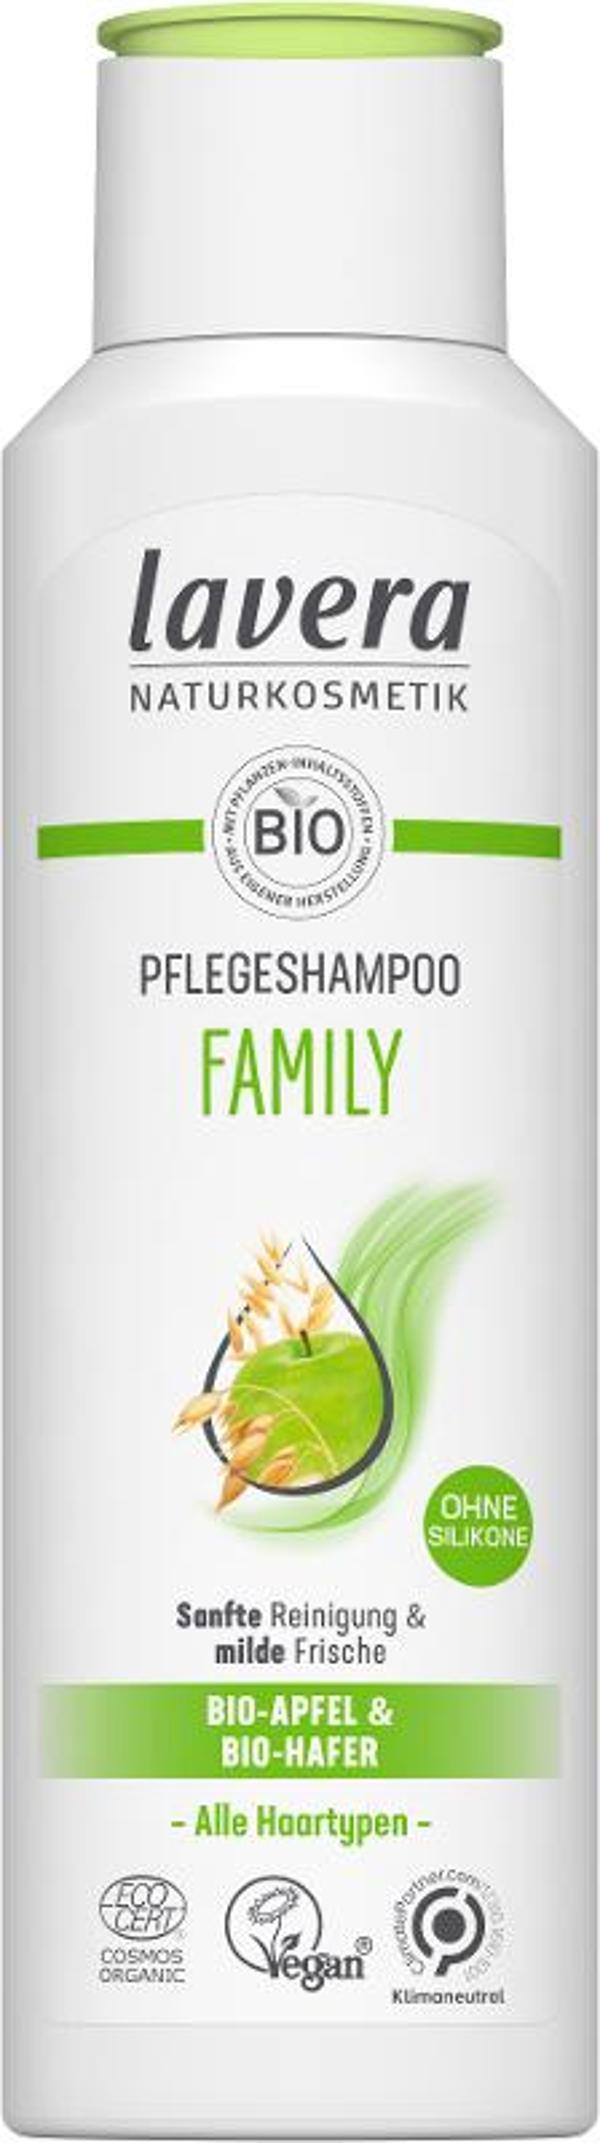 Produktfoto zu Family Pflegeshampoo, 250 ml